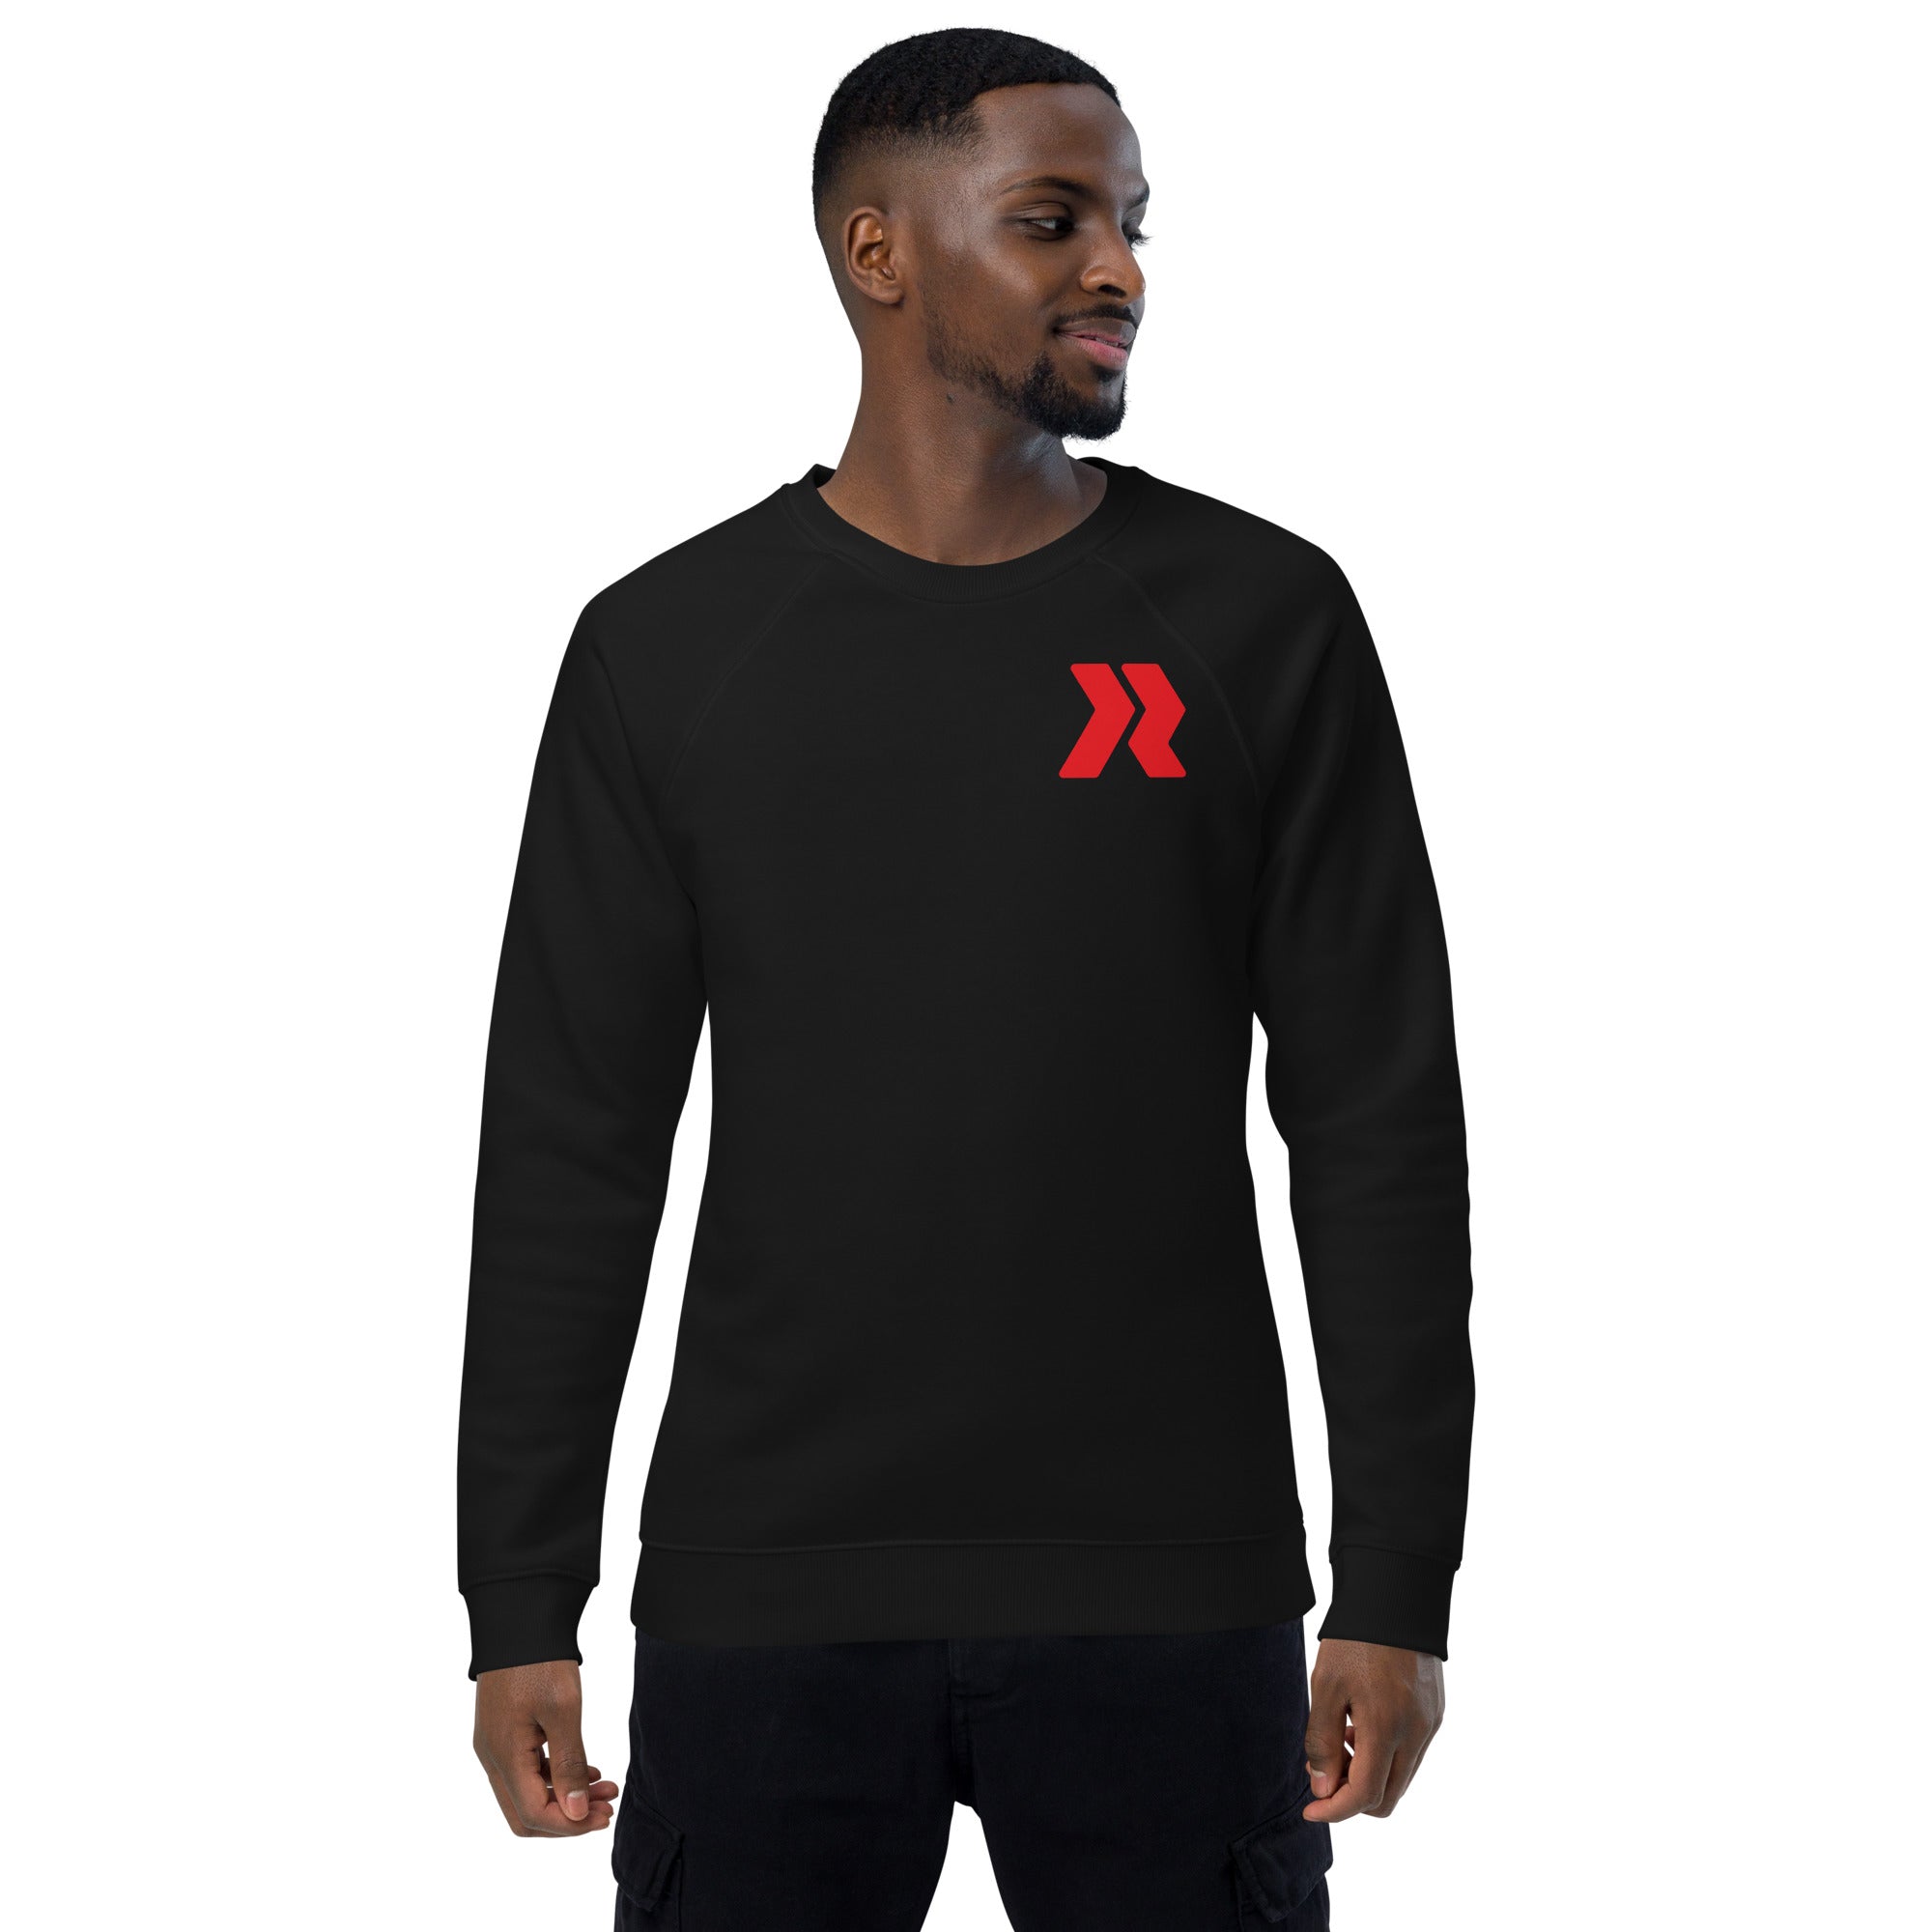 Carrollwood Logo R - R/W - Black Unisex organic raglan sweatshirt